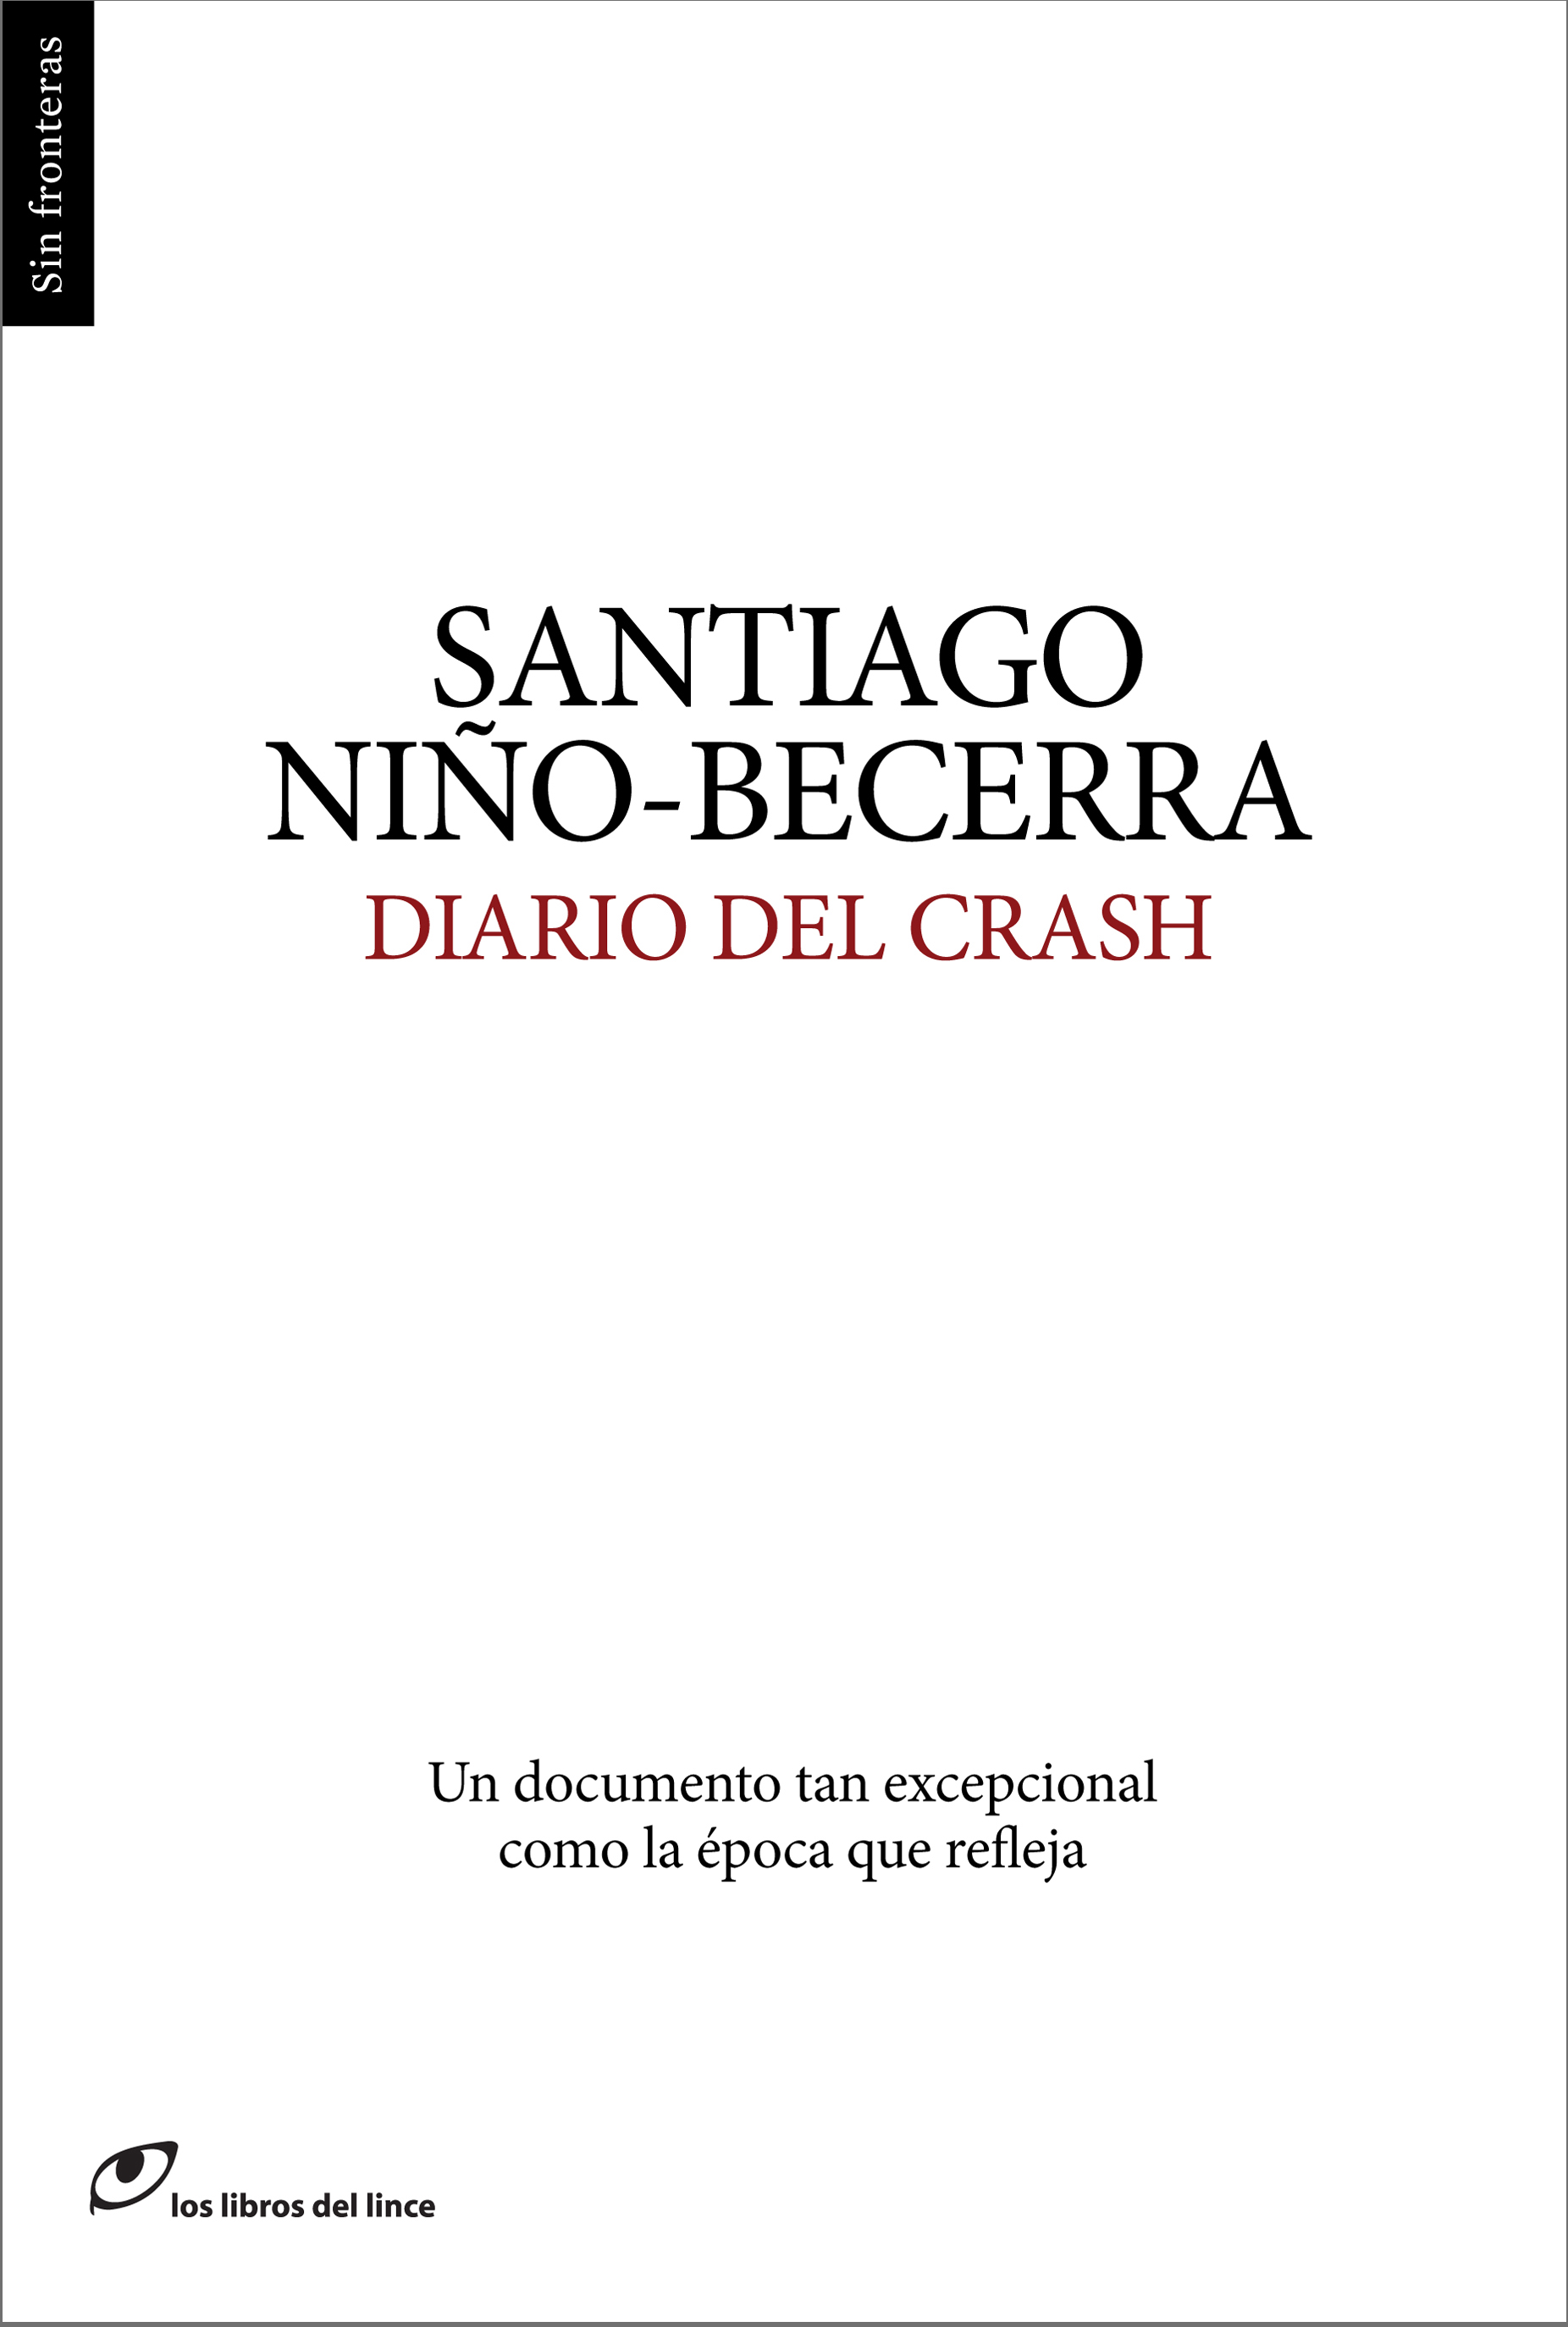 Diario del crash segundas.indd